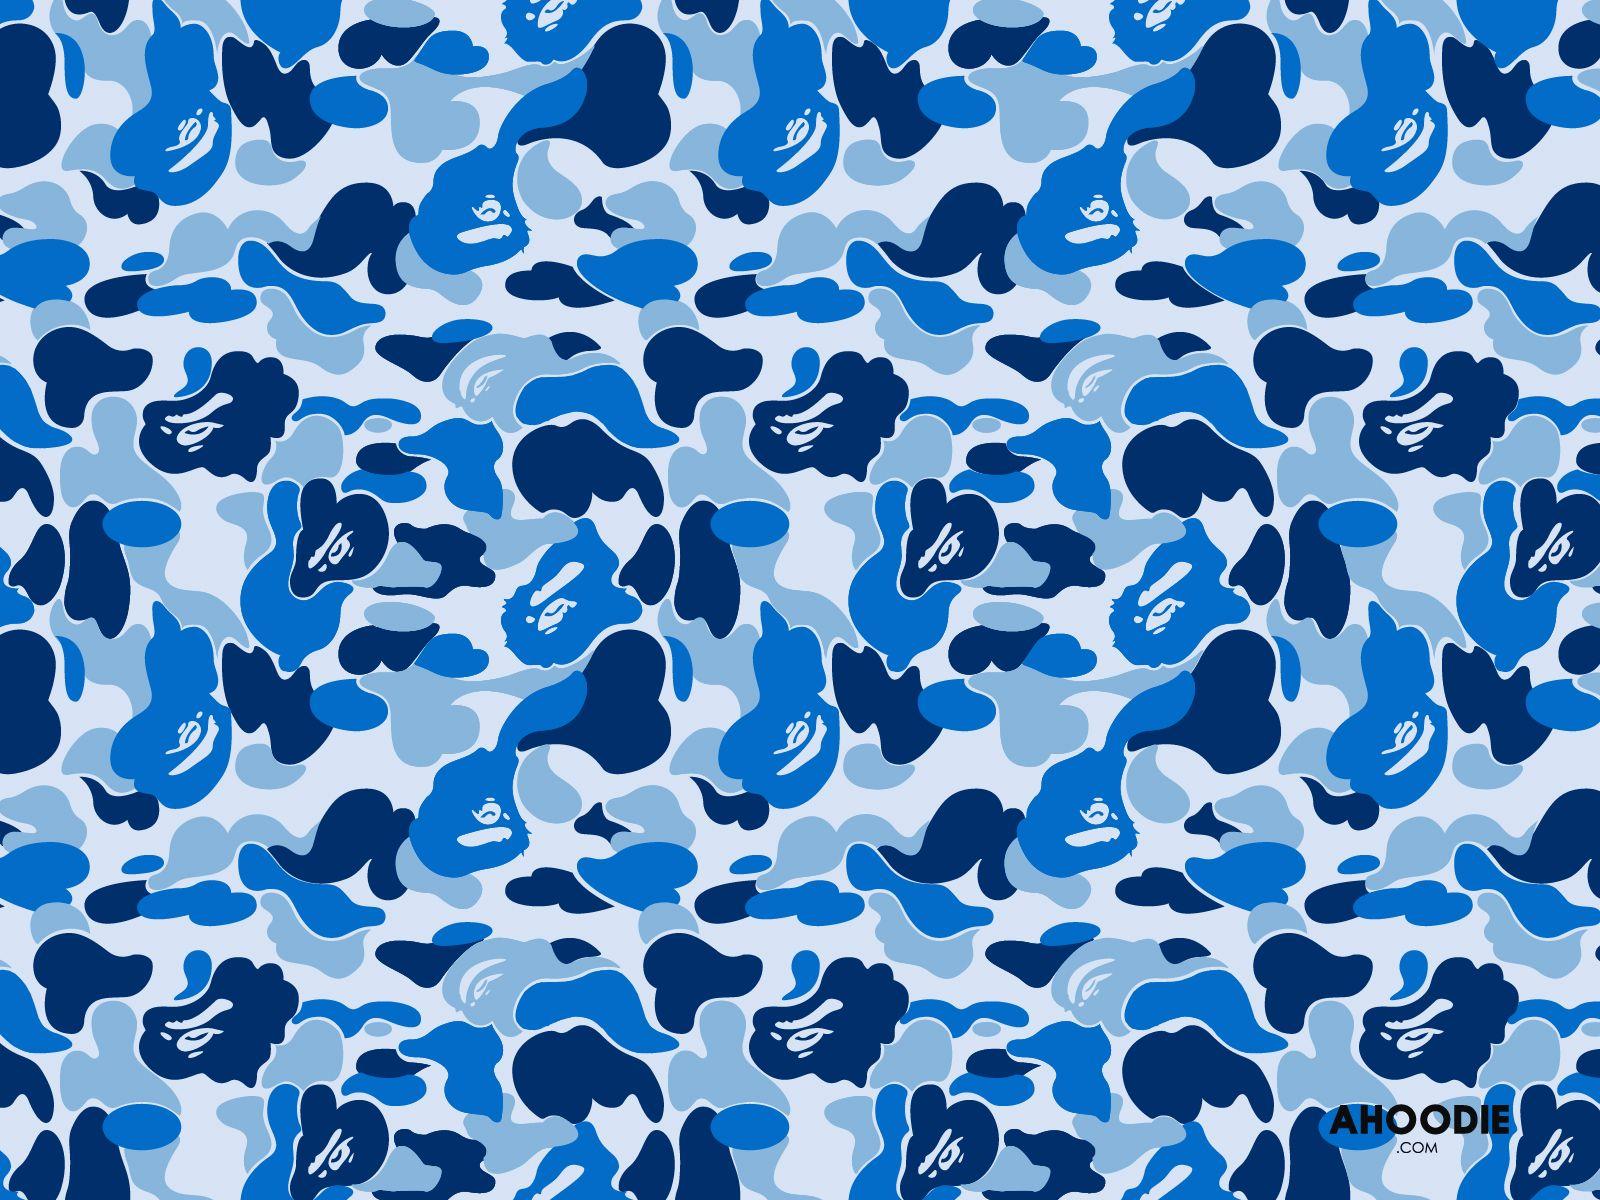 Blue Camo wallpaper by SenseiMods  Download on ZEDGE  347e